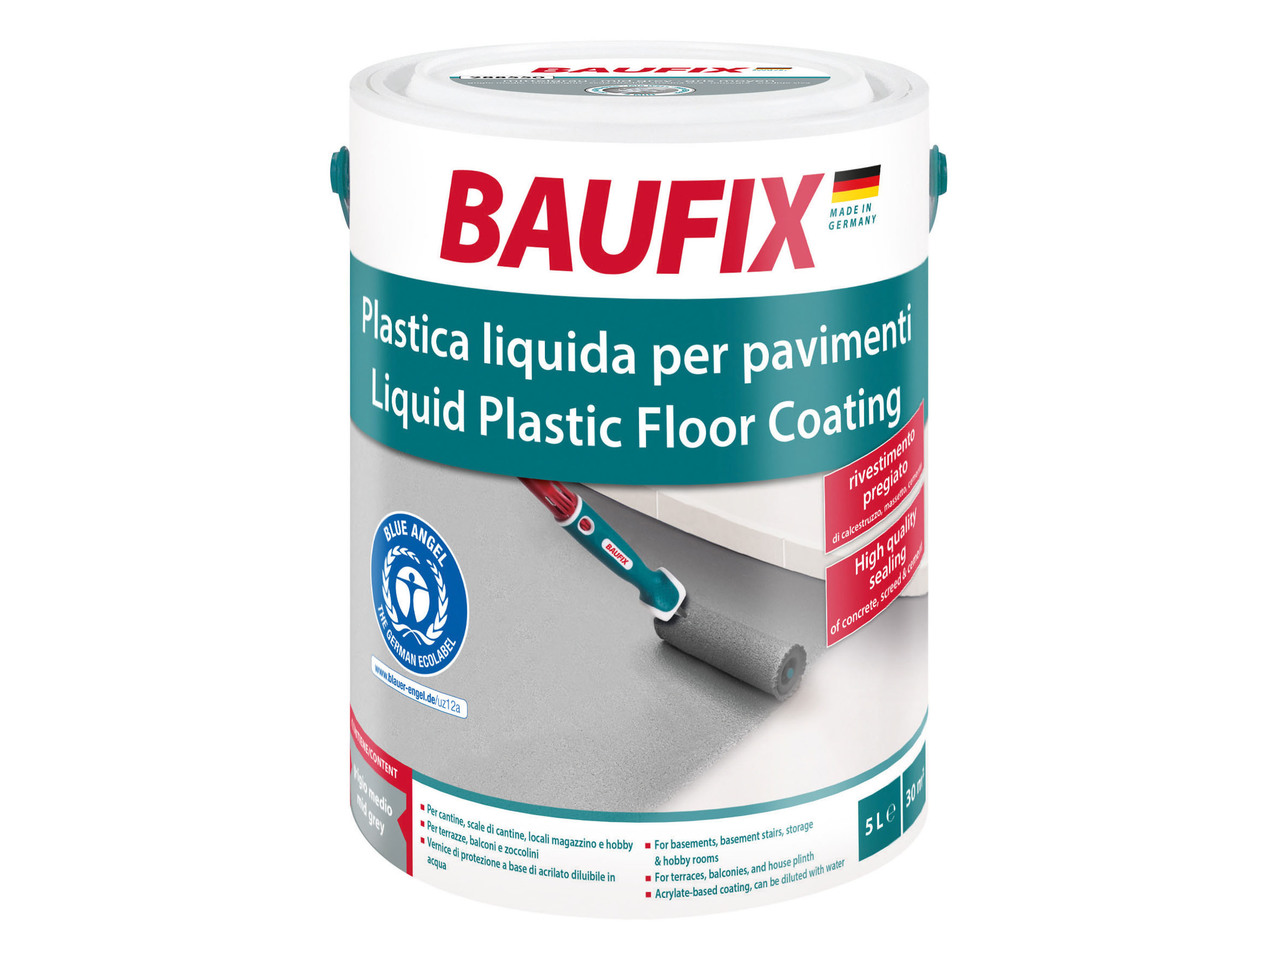 Plastica liquida per pavimenti - Lidl — Italia - Archivio offerte